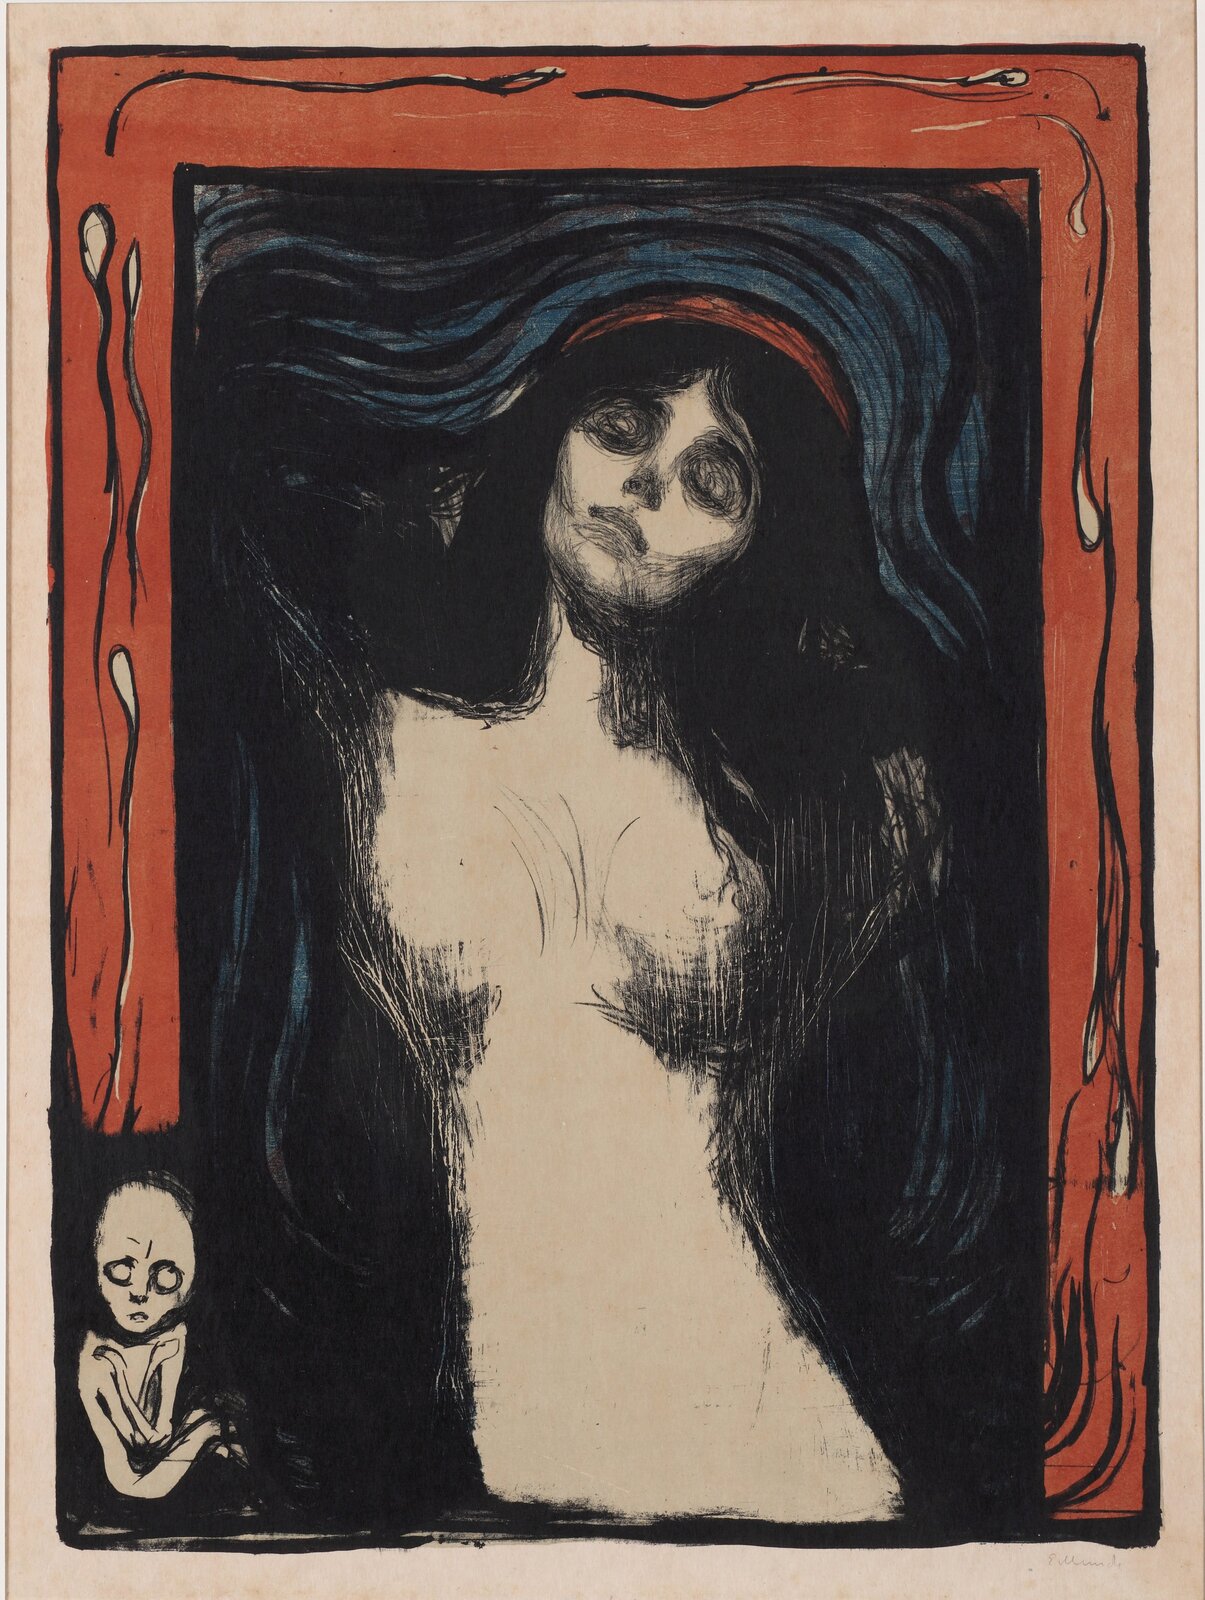 Ilustracja o kształcie pionowego prostokąta przedstawia litografię  Edwarda Muncha „Madonna”. Powstała na podstawie obrazu olejnego o tym samym tytule. Ukazuje nagą kobietę zaplatającą ręce za plecami.  Madonna ukazana w momencie ekstazy. Jej głowa z długimi, rozkładającymi się na ramiona, ciemnymi włosami, odchylona jest do tyłu. Jedną rękę ma założoną za siebie, prawa, zgięta w łokciu sięga za głowę.  Jedynym akcentem, który podkreśla sakralny wymiar dzieła jest ledwie widoczna aureola. Tło obrazu to okalające postać linie. 